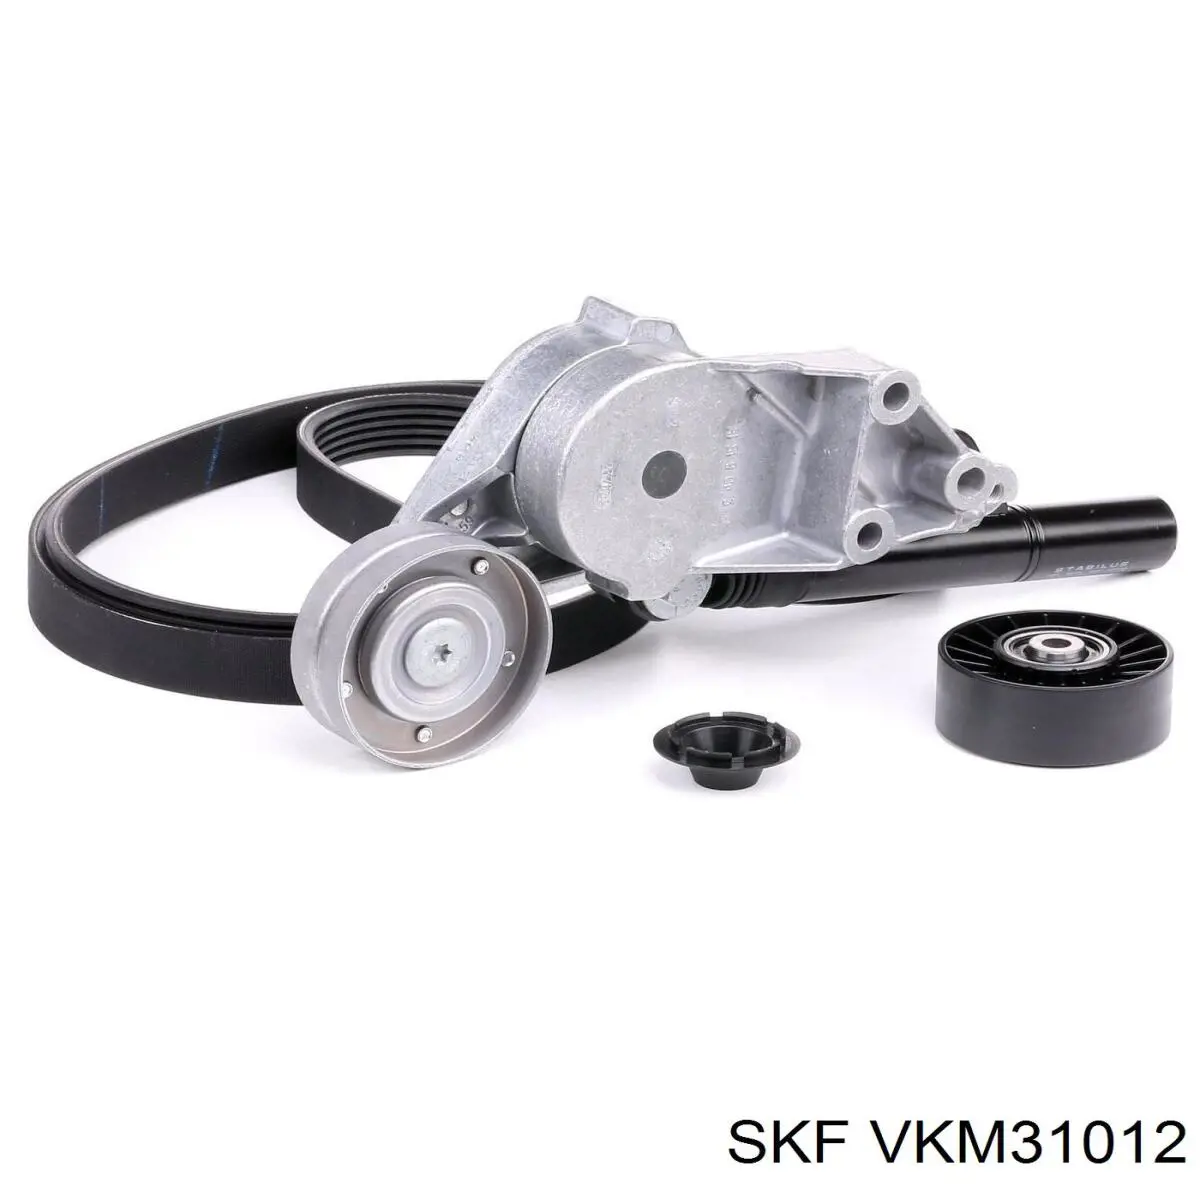 VKM 31012 SKF tensor de correa, correa poli v